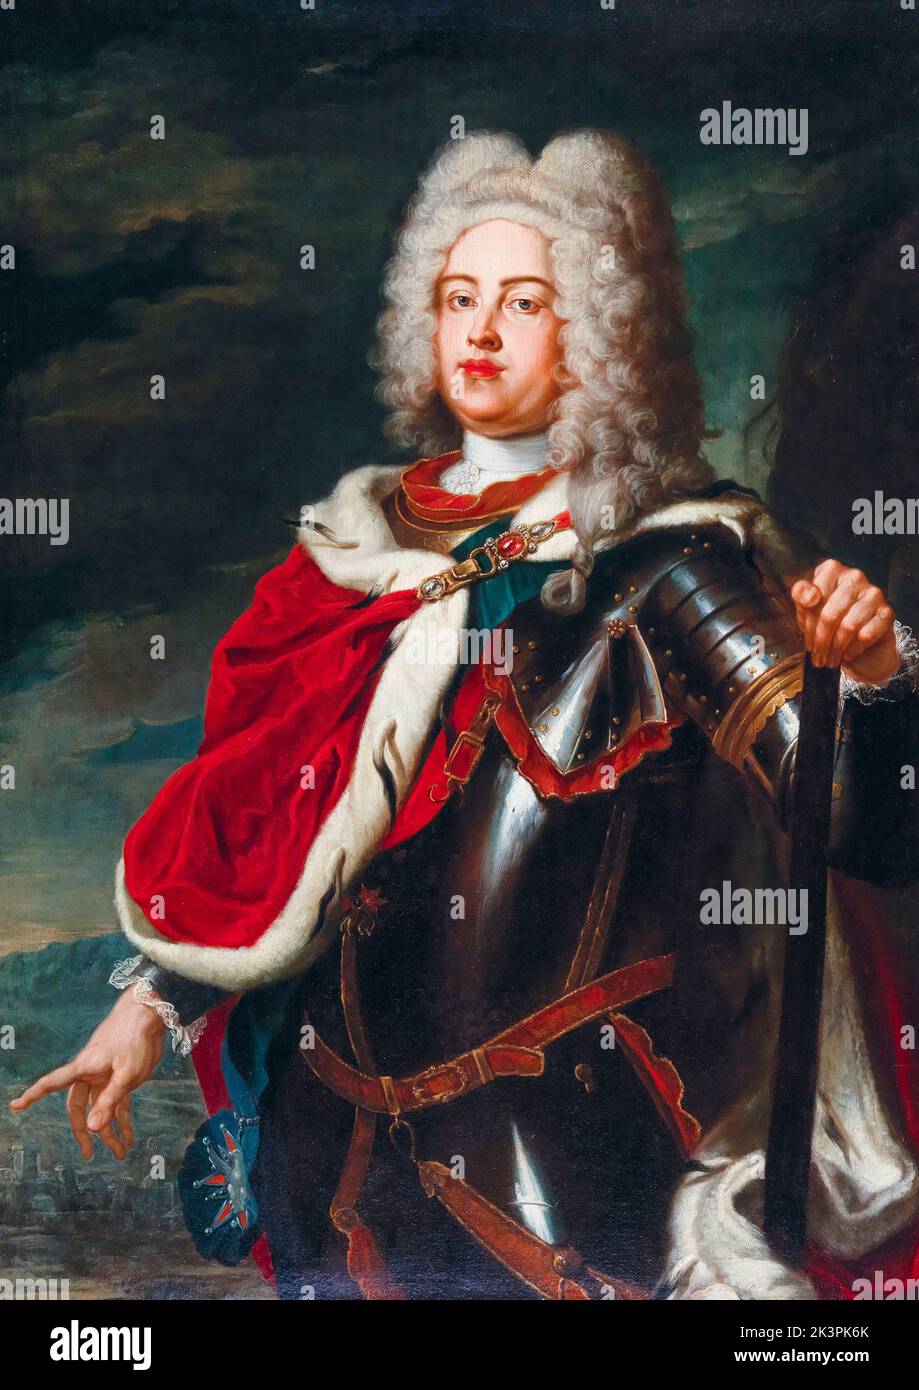 Frederick August II (1696-1763) électeur de Saxe et roi de Pologne (1733-1763), portrait peint à l'huile sur toile par Ádám Mányoki, 1722-1726 Banque D'Images